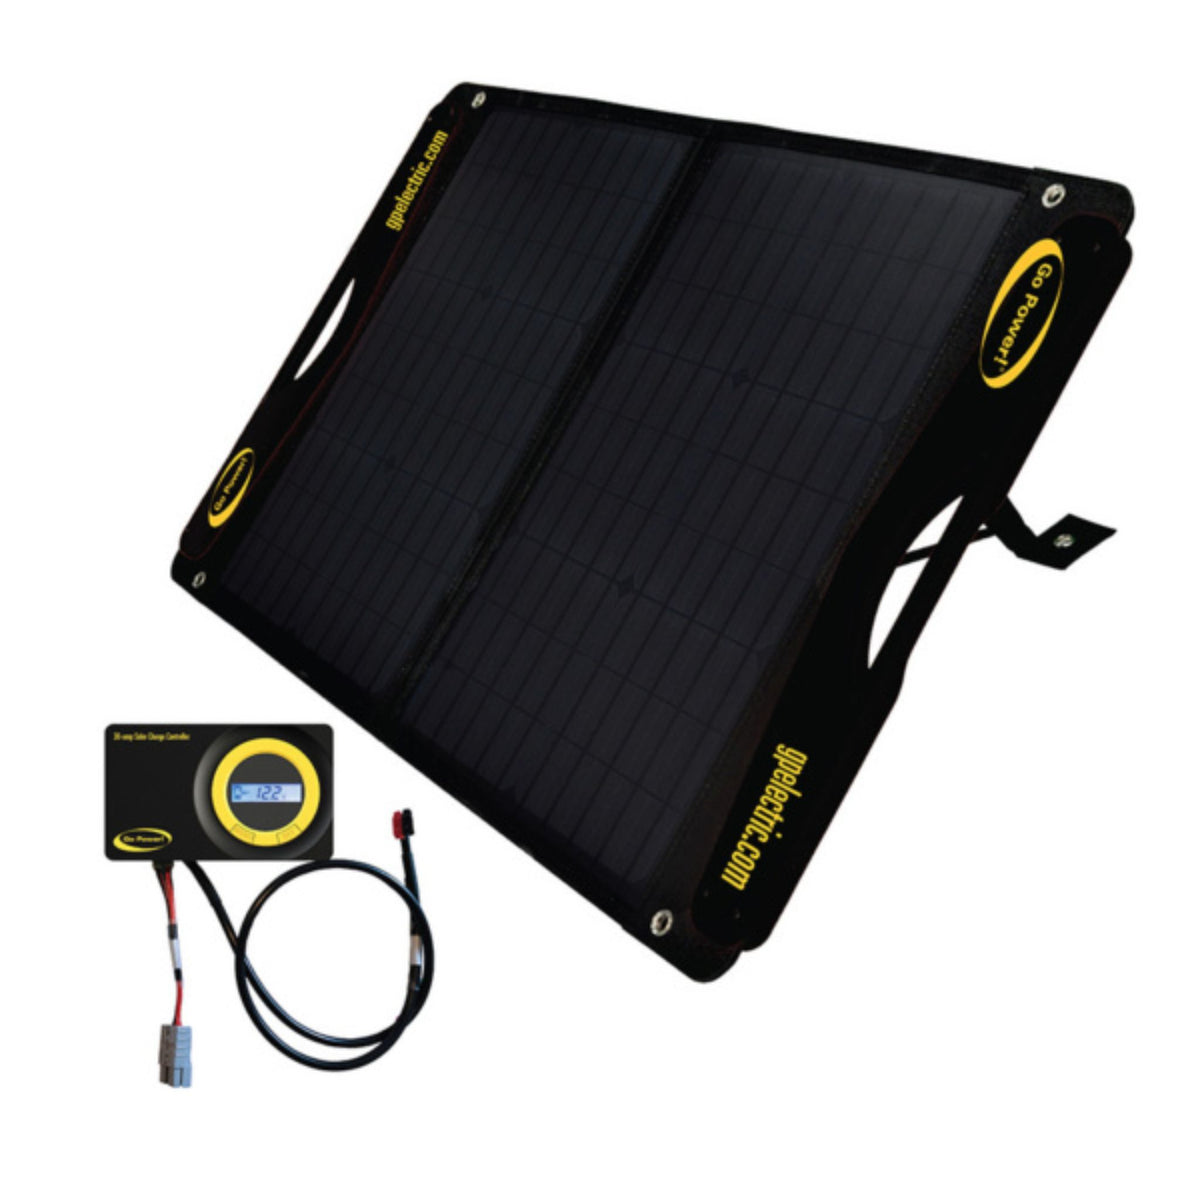 Go Power! DuraLite 100-watt Solar Kit